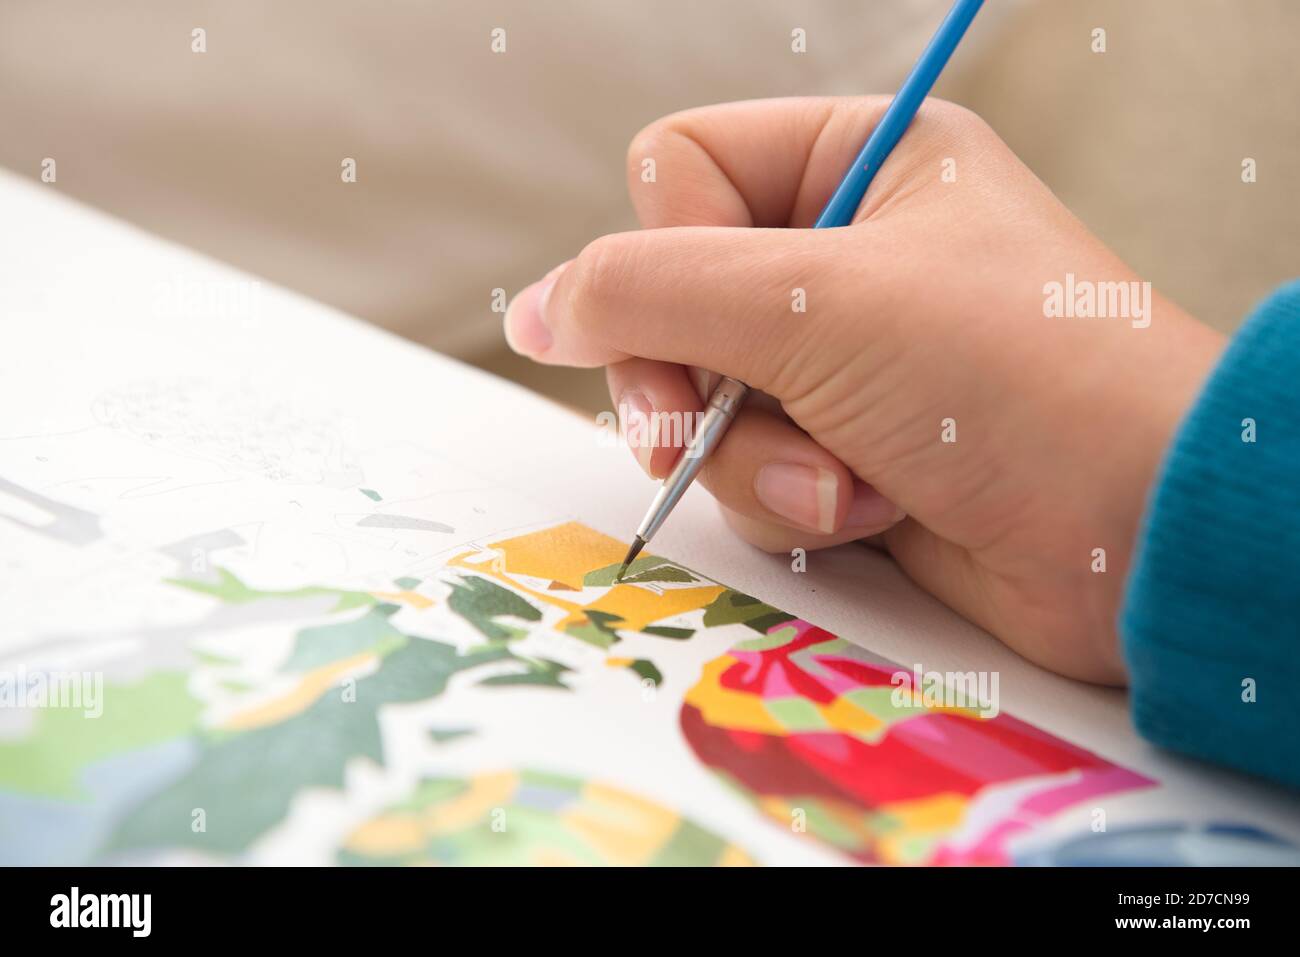 8 - gros plan détaillé d'un pinceau fin utilisé par une jeune femme pour peindre par des nombres. Plusieurs couleurs et des bleus éclatants contrastent la peau chaude. Banque D'Images